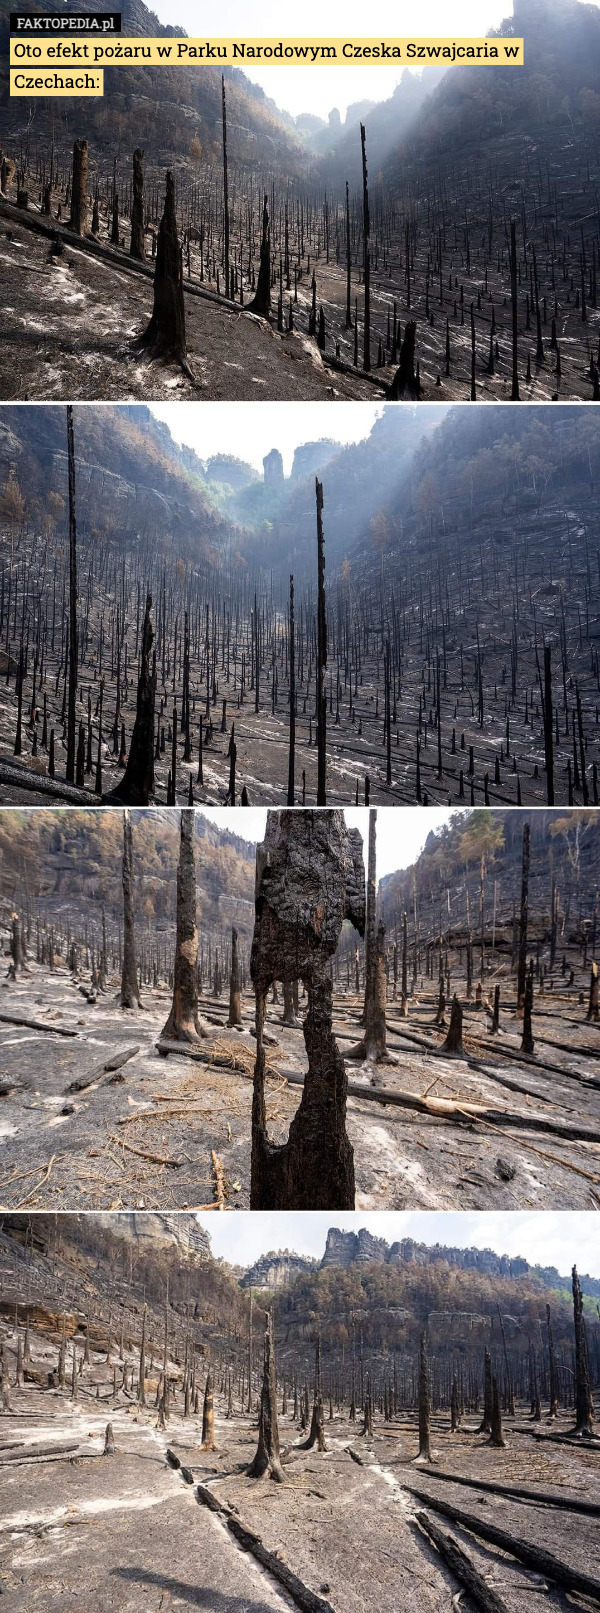 Oto efekt pożaru w Parku Narodowym Czeska Szwajcaria w Czechach: 